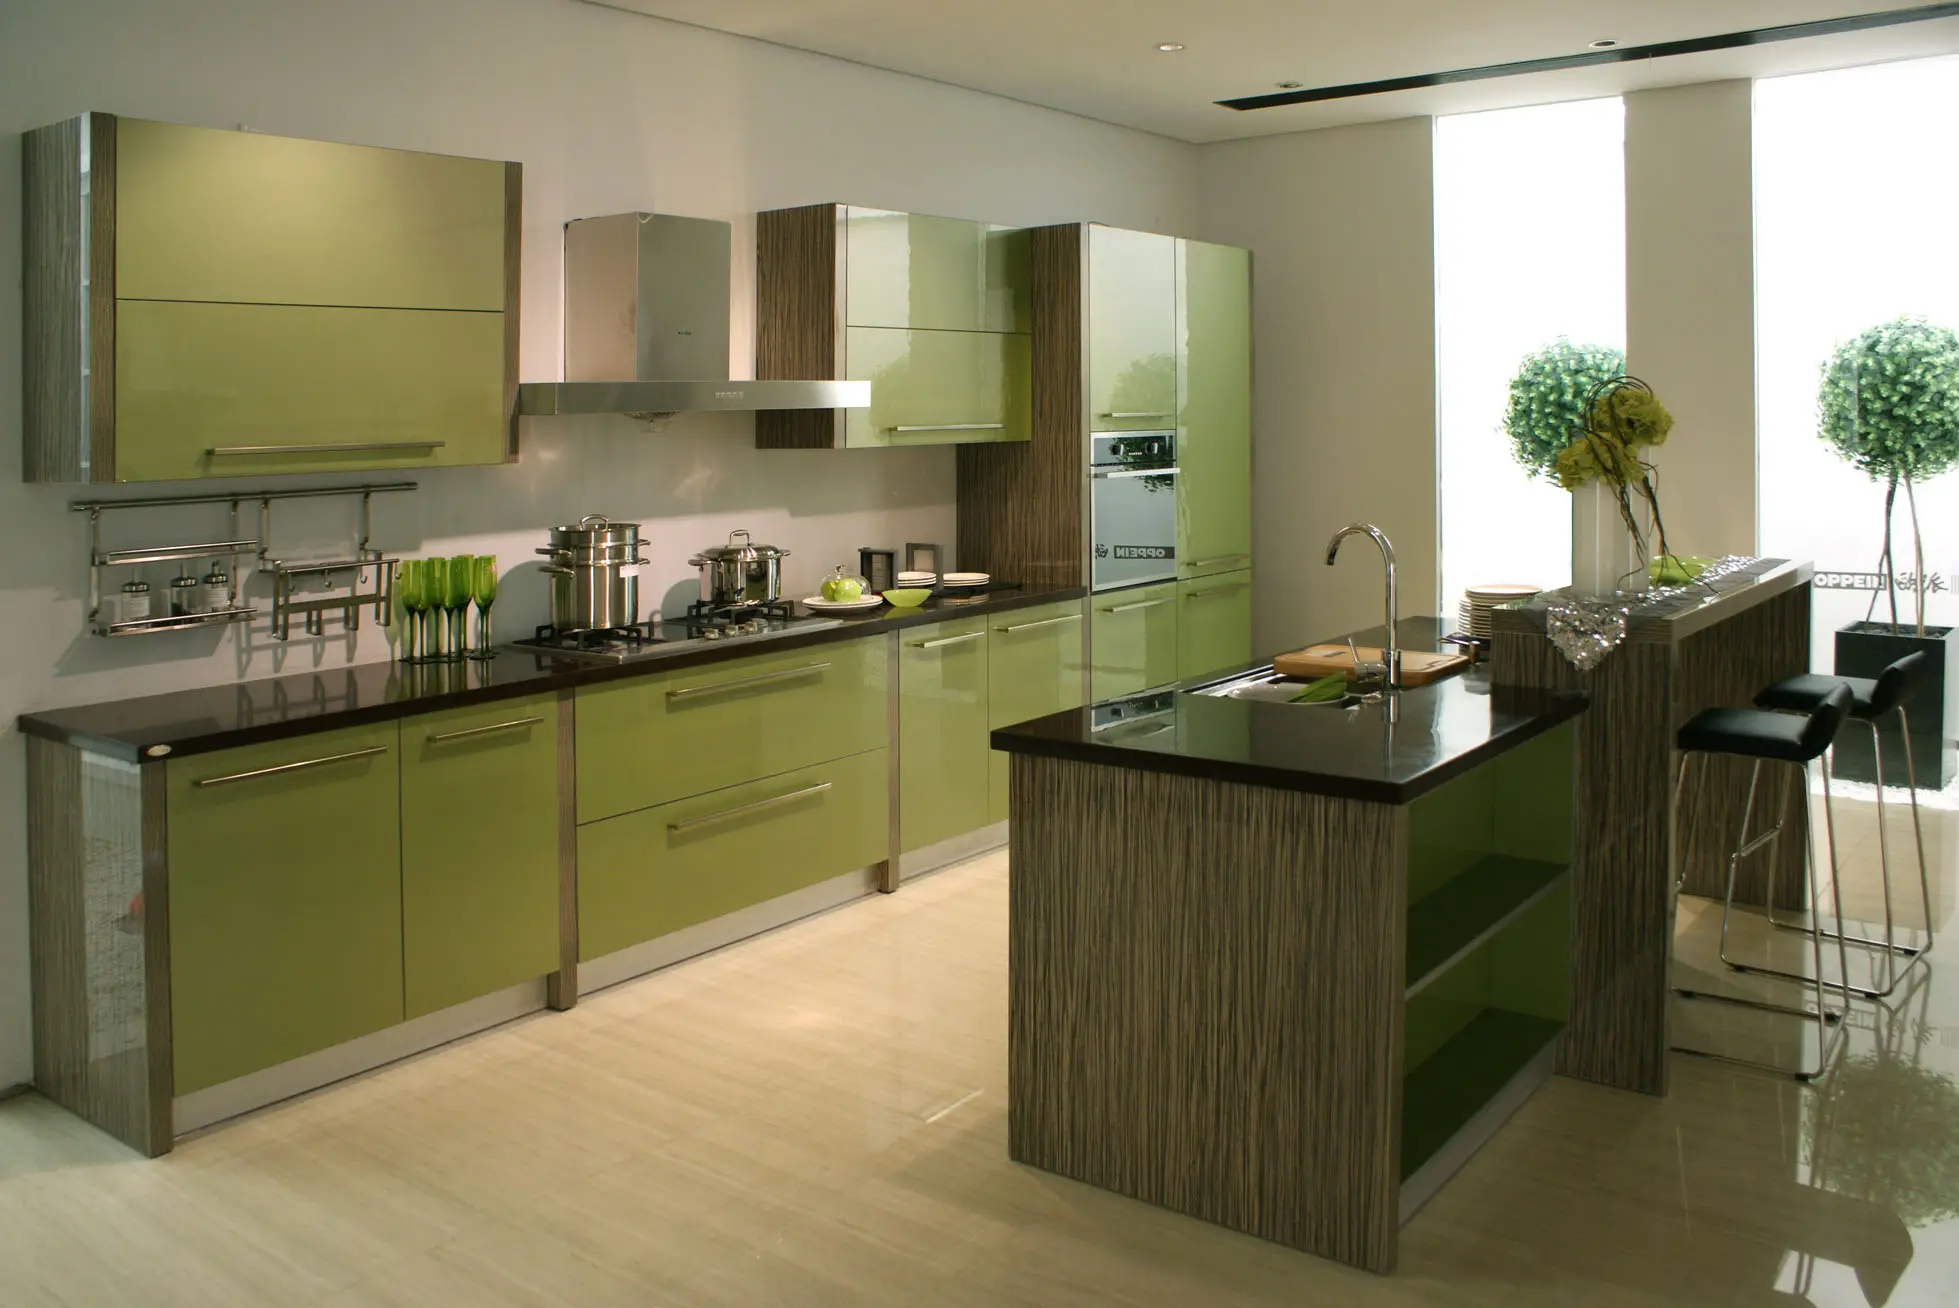 CBMMART-Ensemble complet de placards de cuisine en verre vert bleu menthe Shaker, armoires de cuisine de couleur verte ou bleue et grise